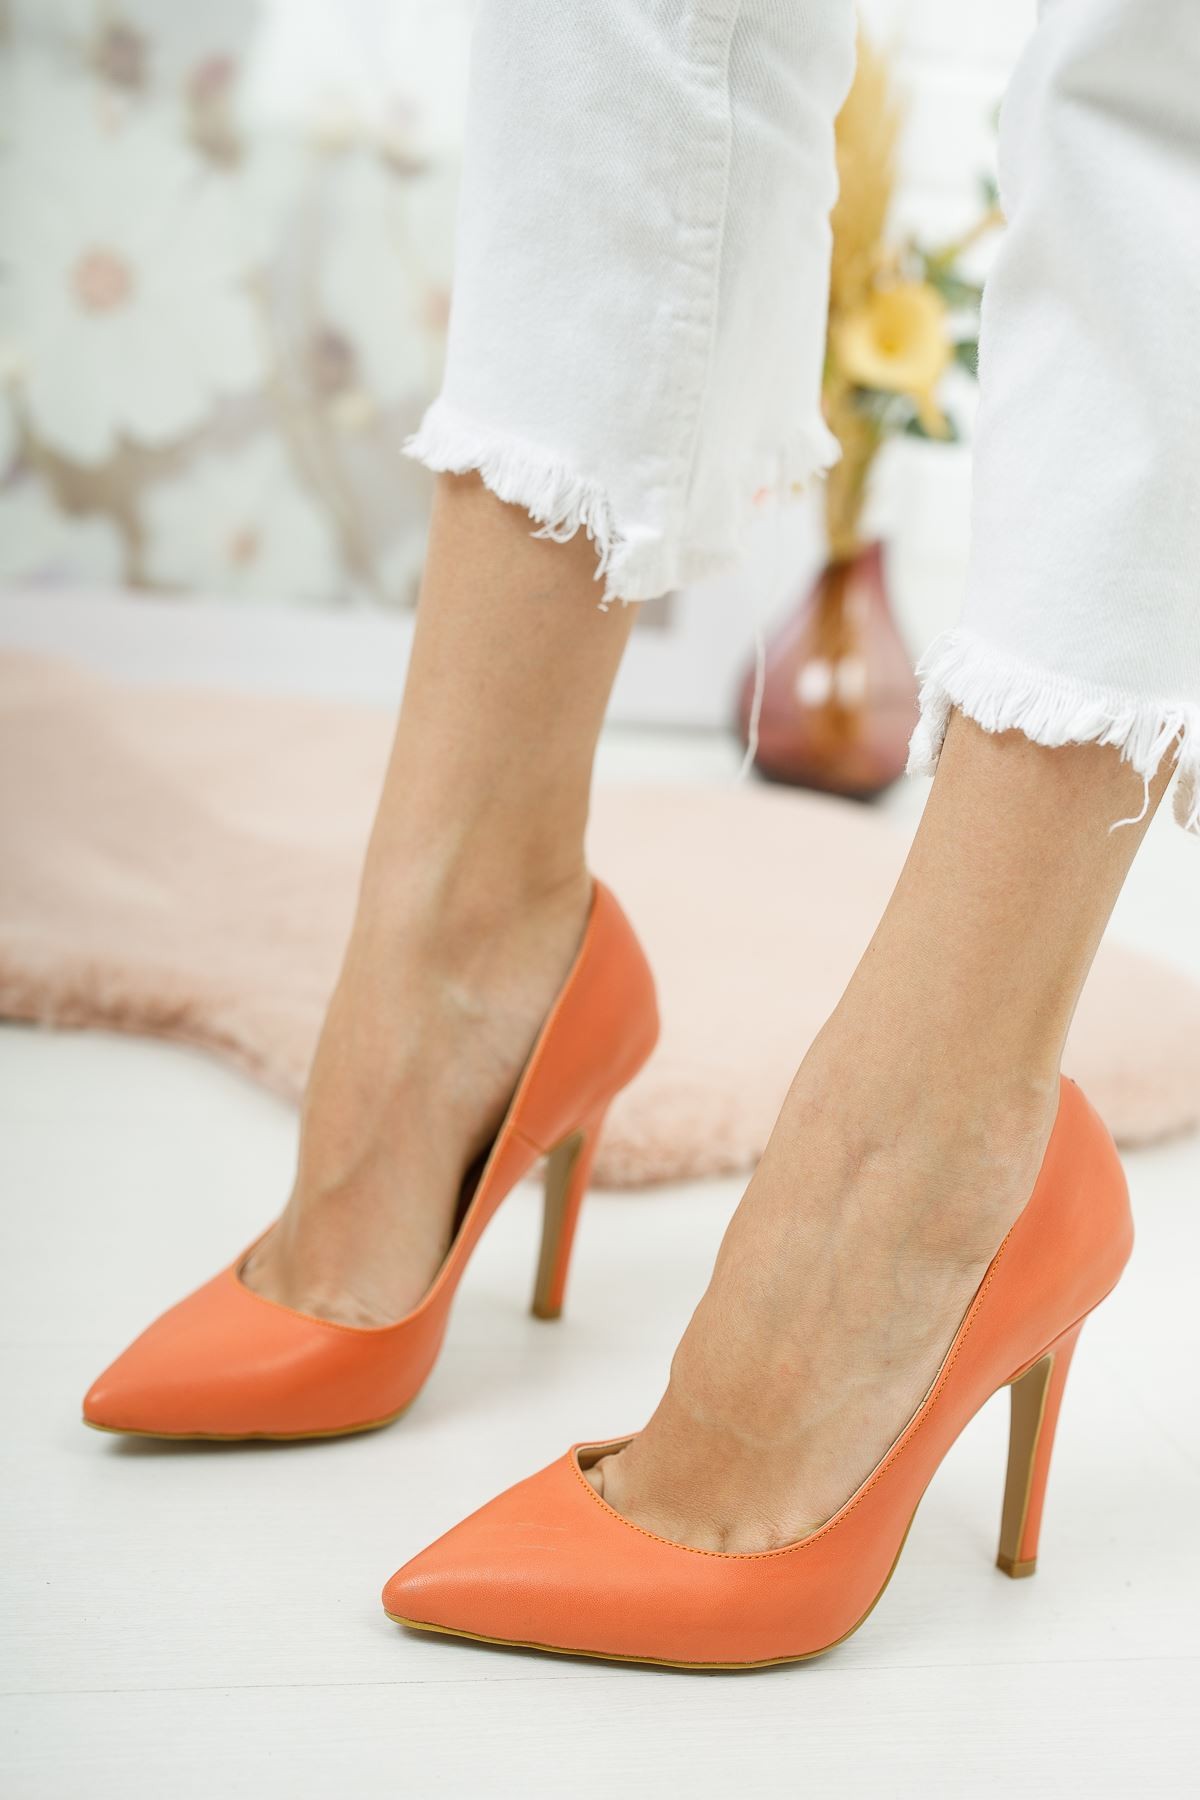 Turuncu Tokyo Kadın Topuklu Ayakkabı Stiletto